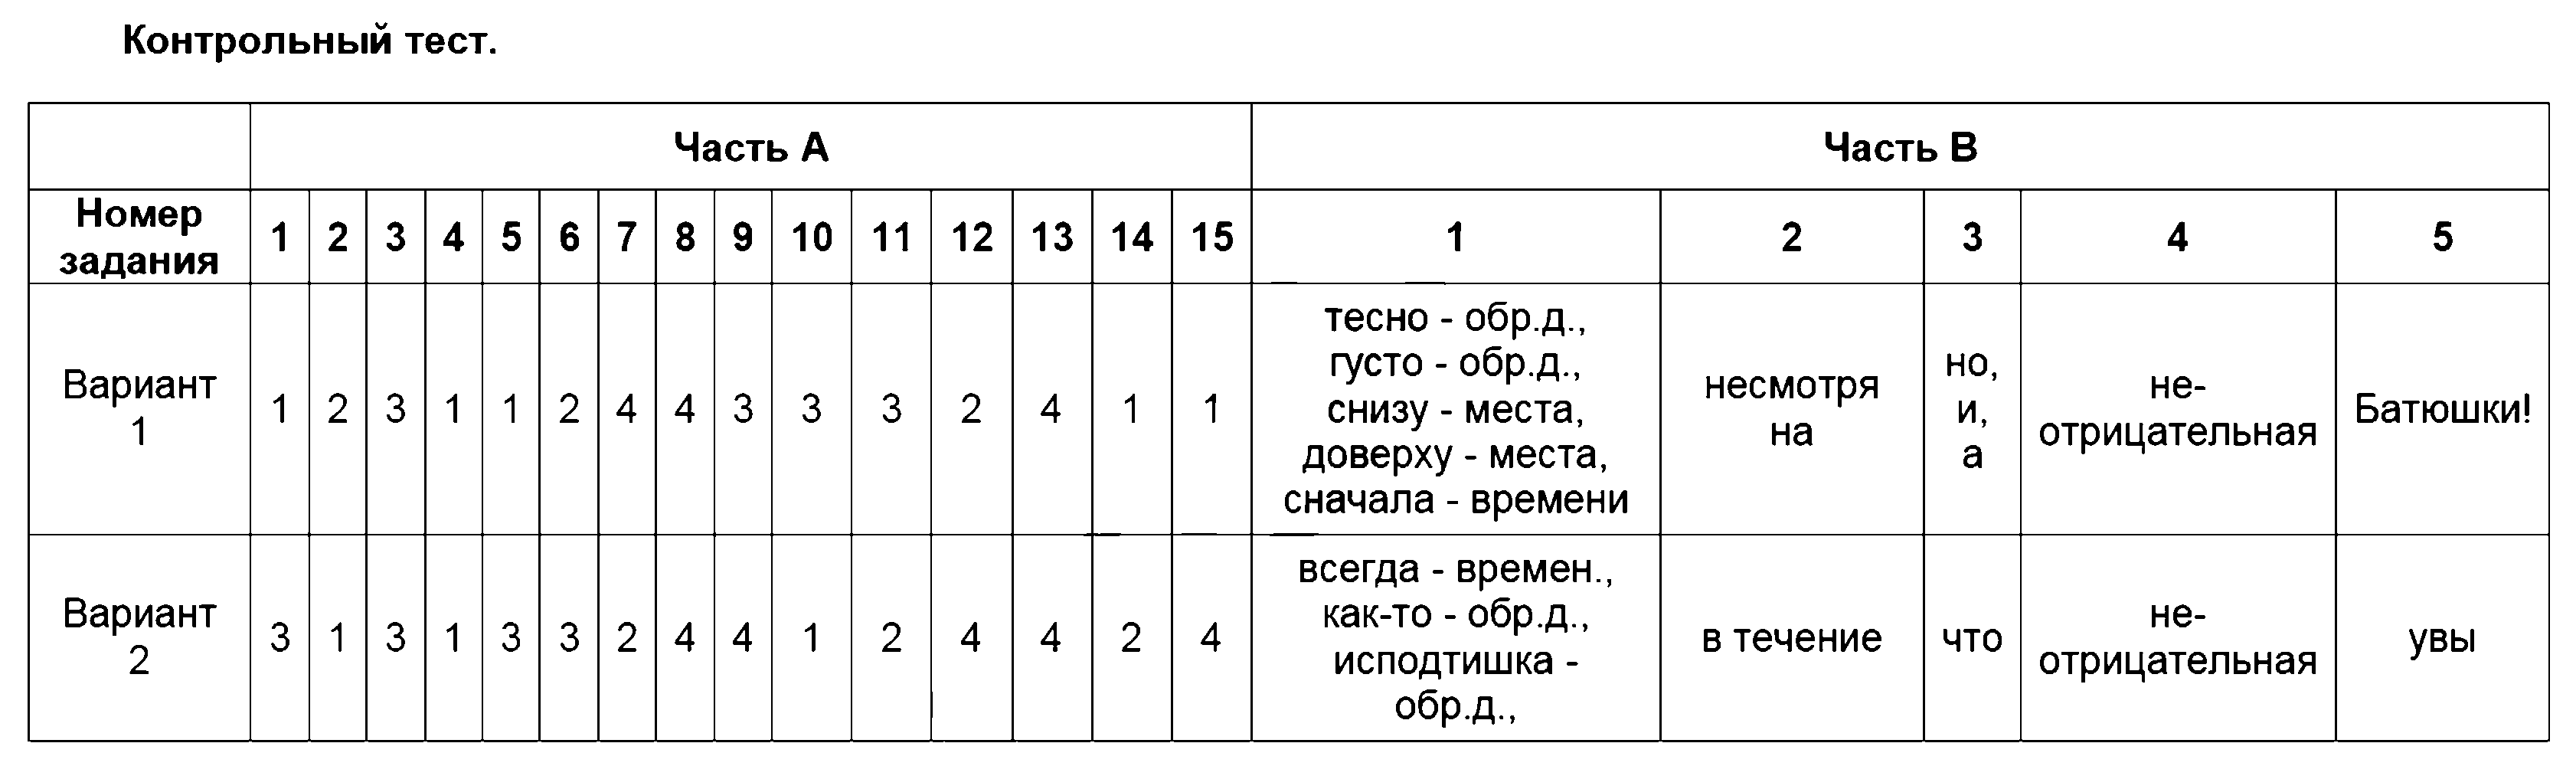 ГДЗ Русский язык 7 класс - 17. Контрольный тест